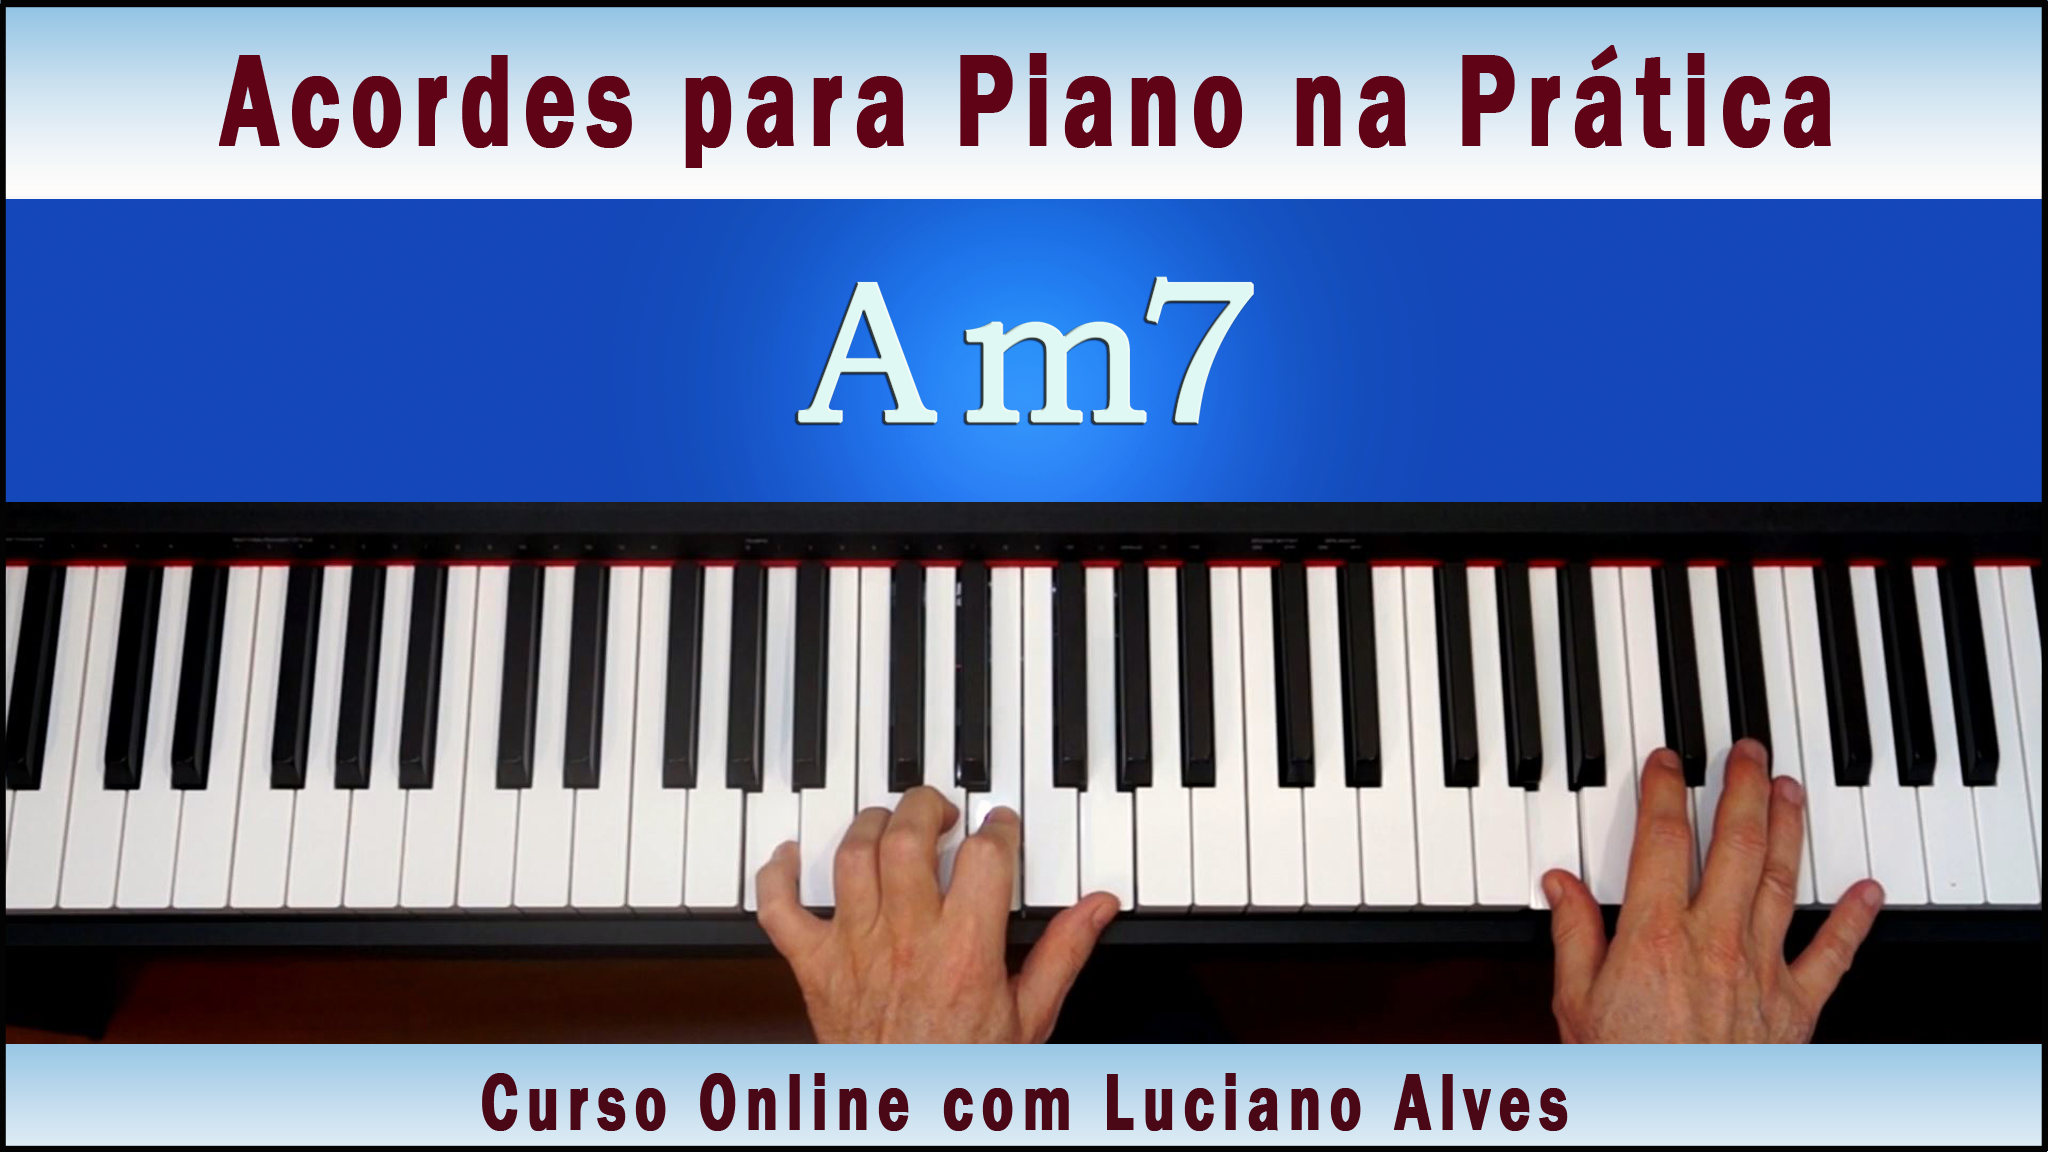 Curso Acordes para Piano na Prática com Luciano Alves